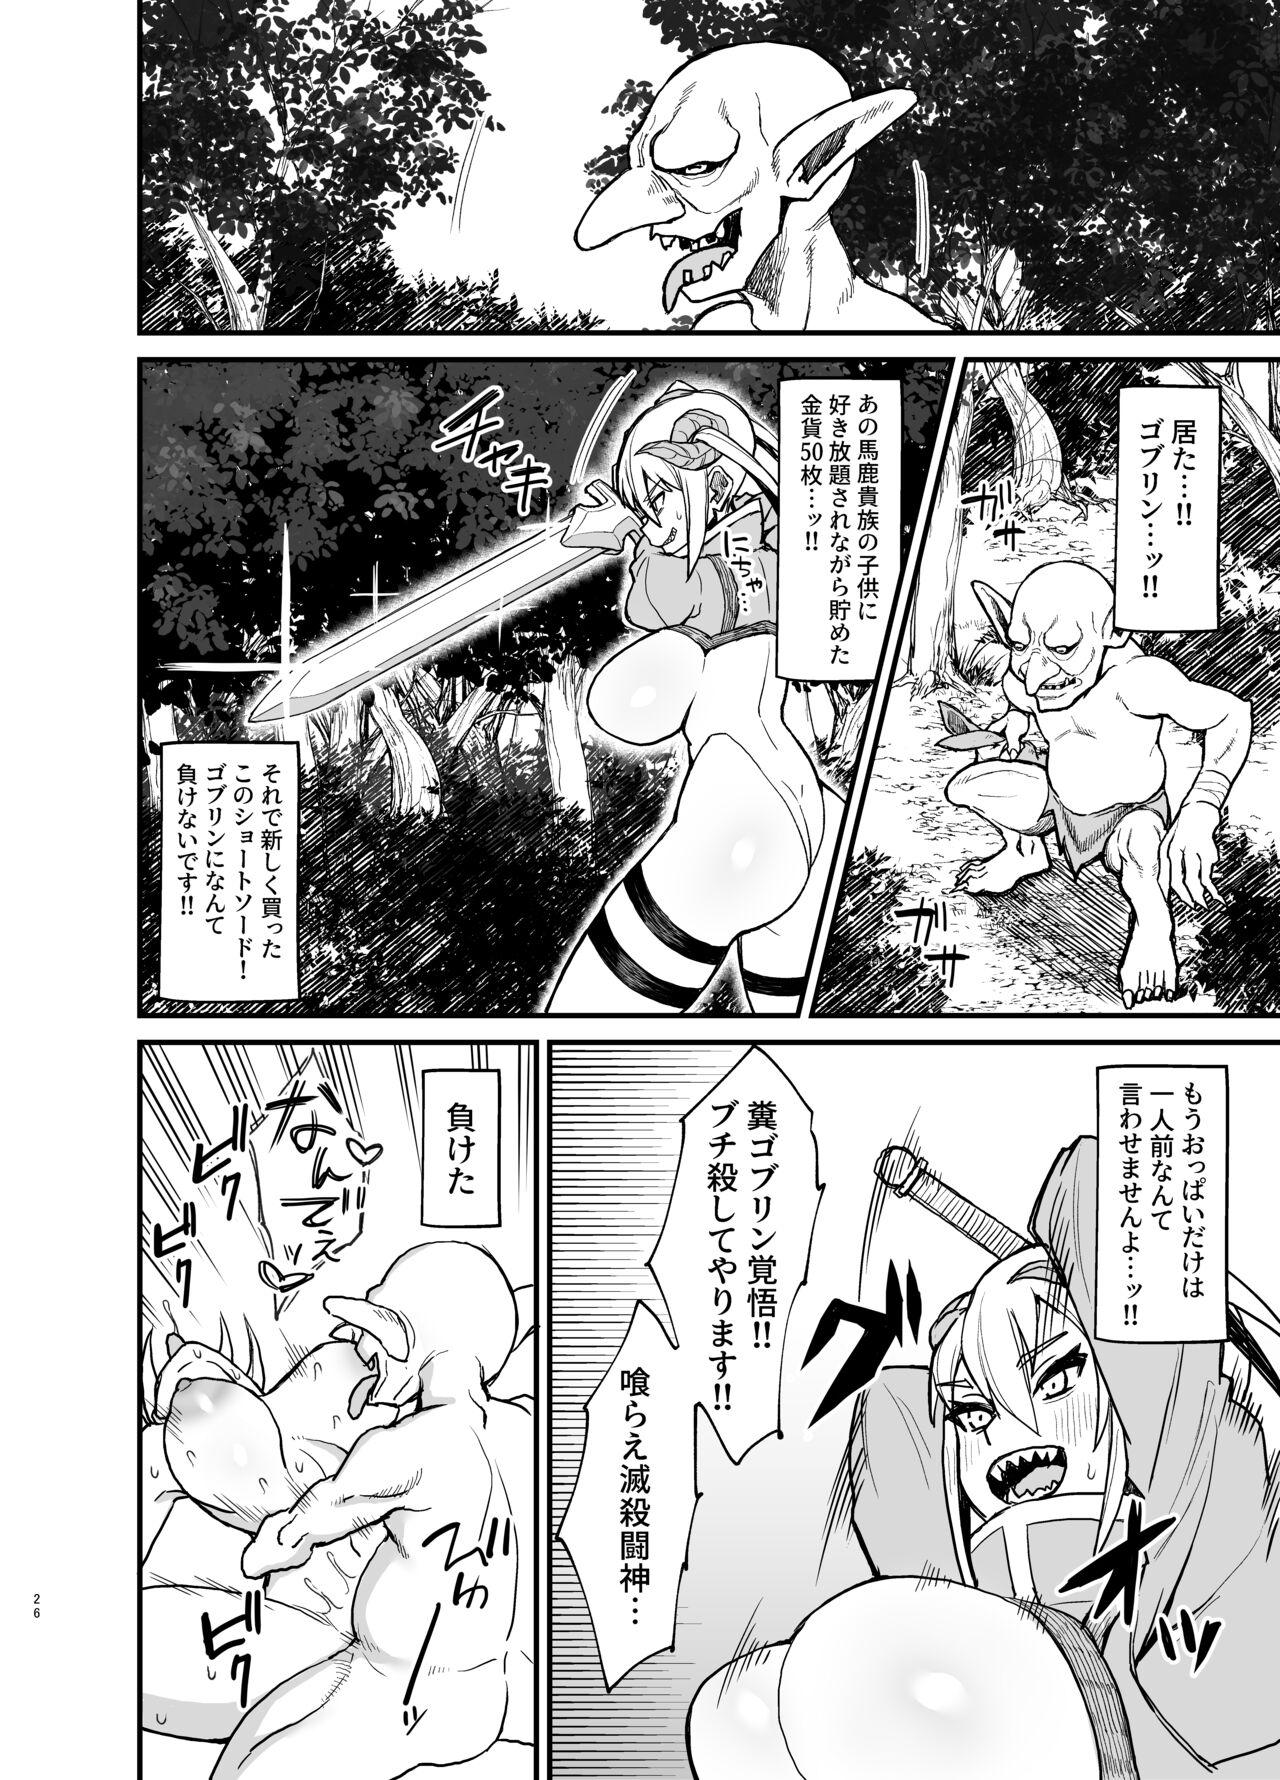 Cachonda Mazoku no Boukensha-san 4 - Original Safado - Page 5